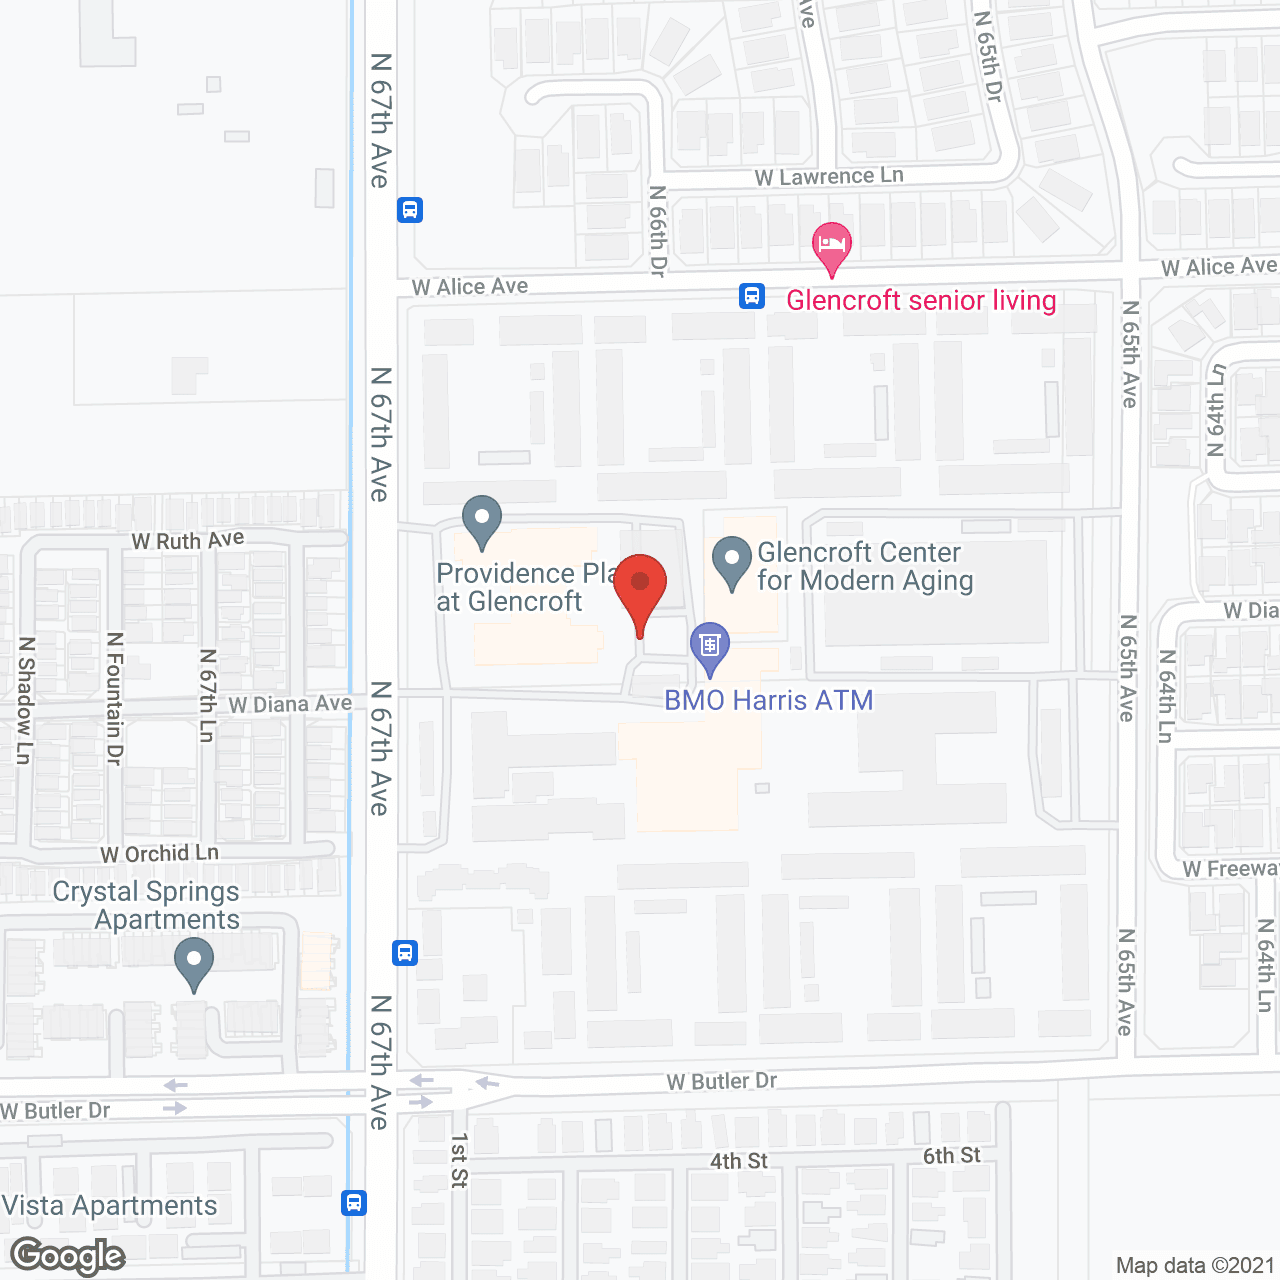 Glencroft Center For Modern Aging in google map